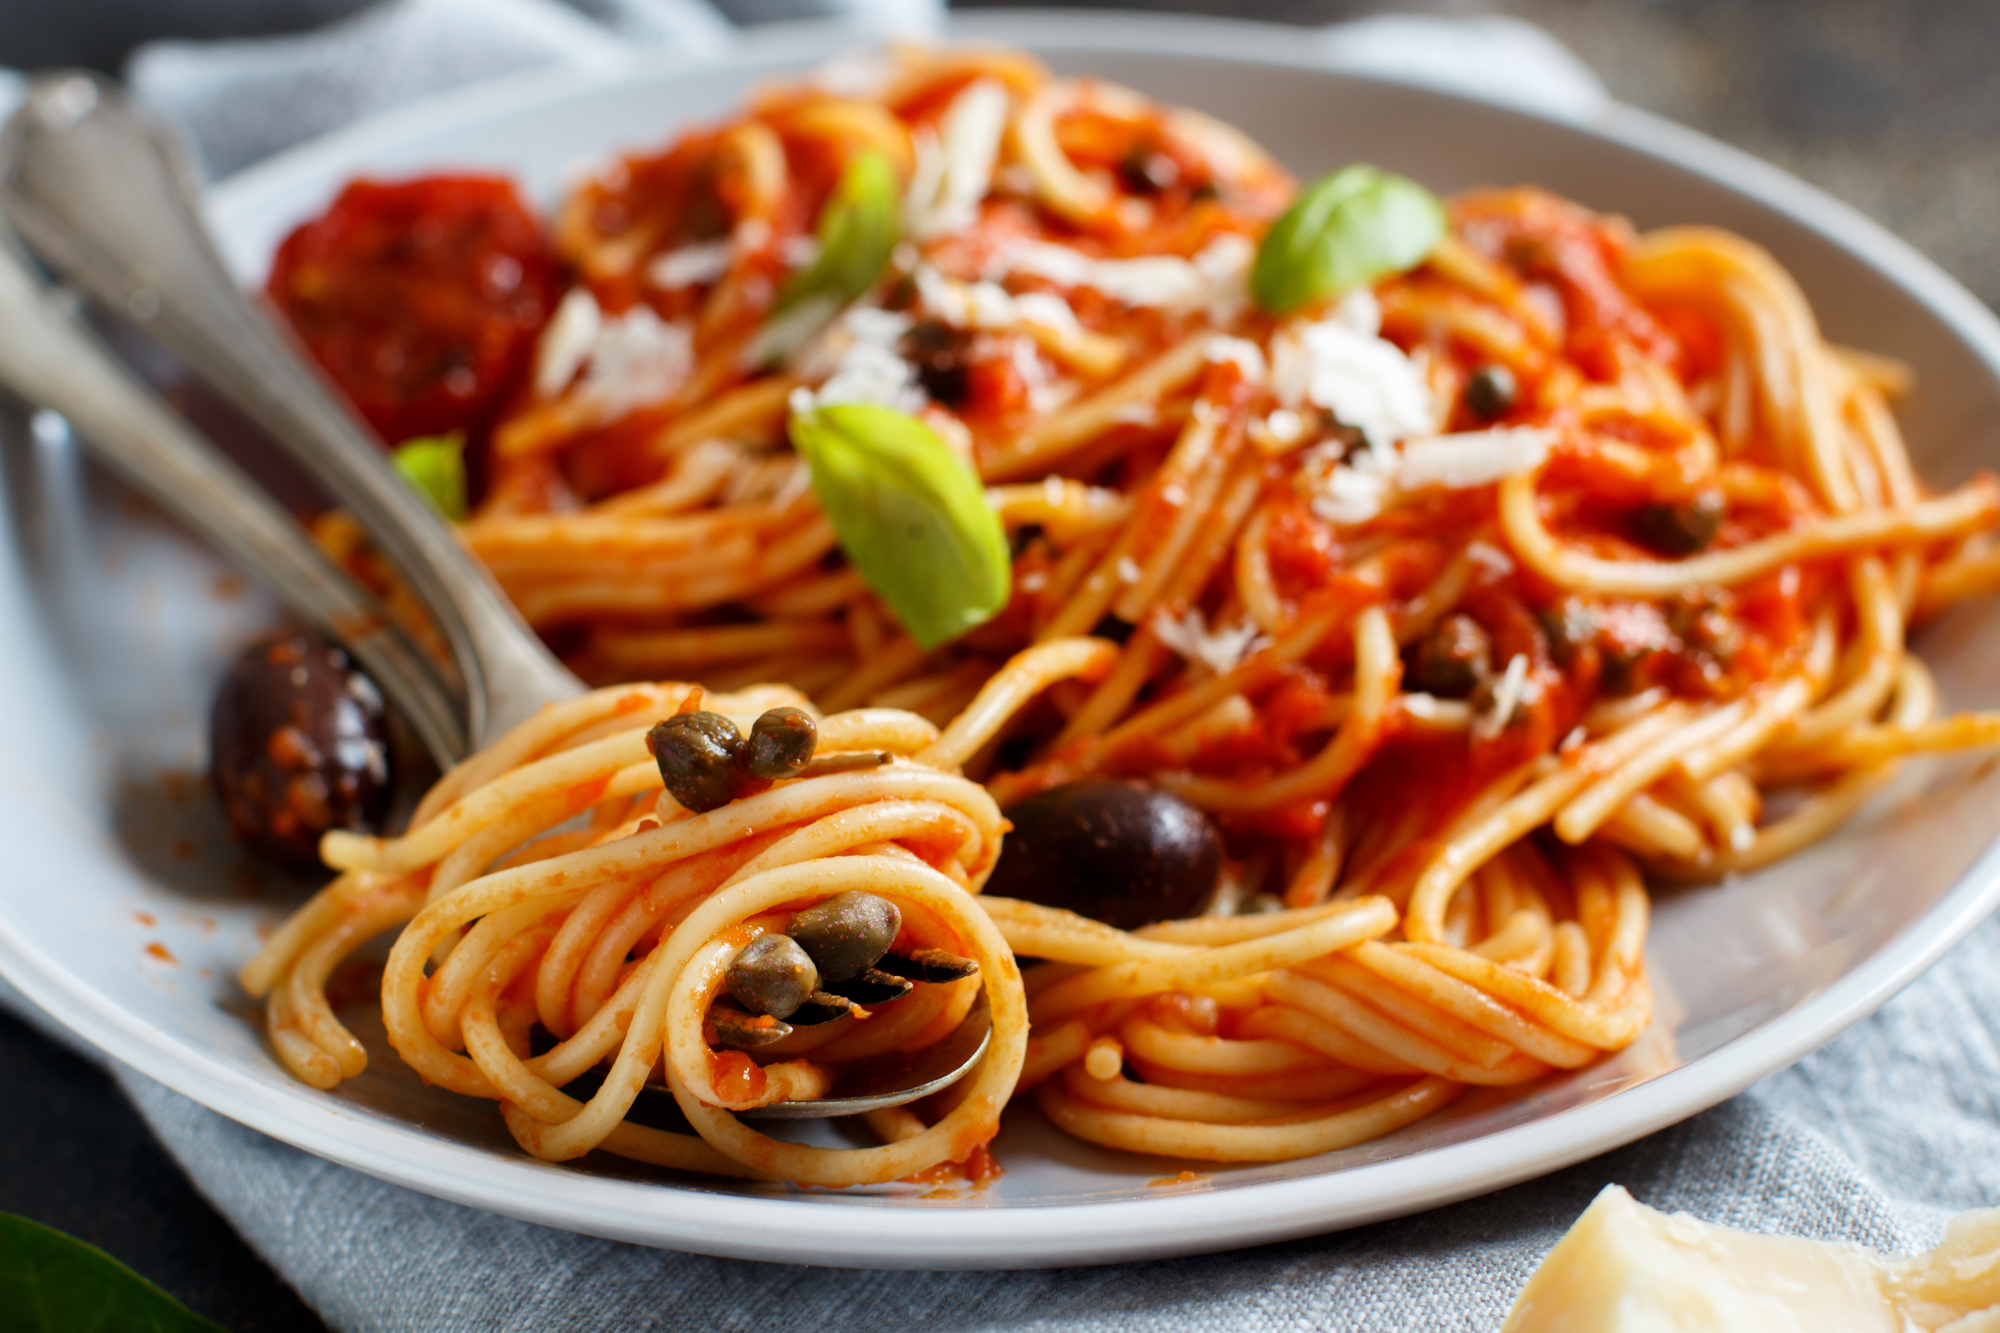 Pasta alla puttanesca - Spaghetti al pomodoro olive e capperi